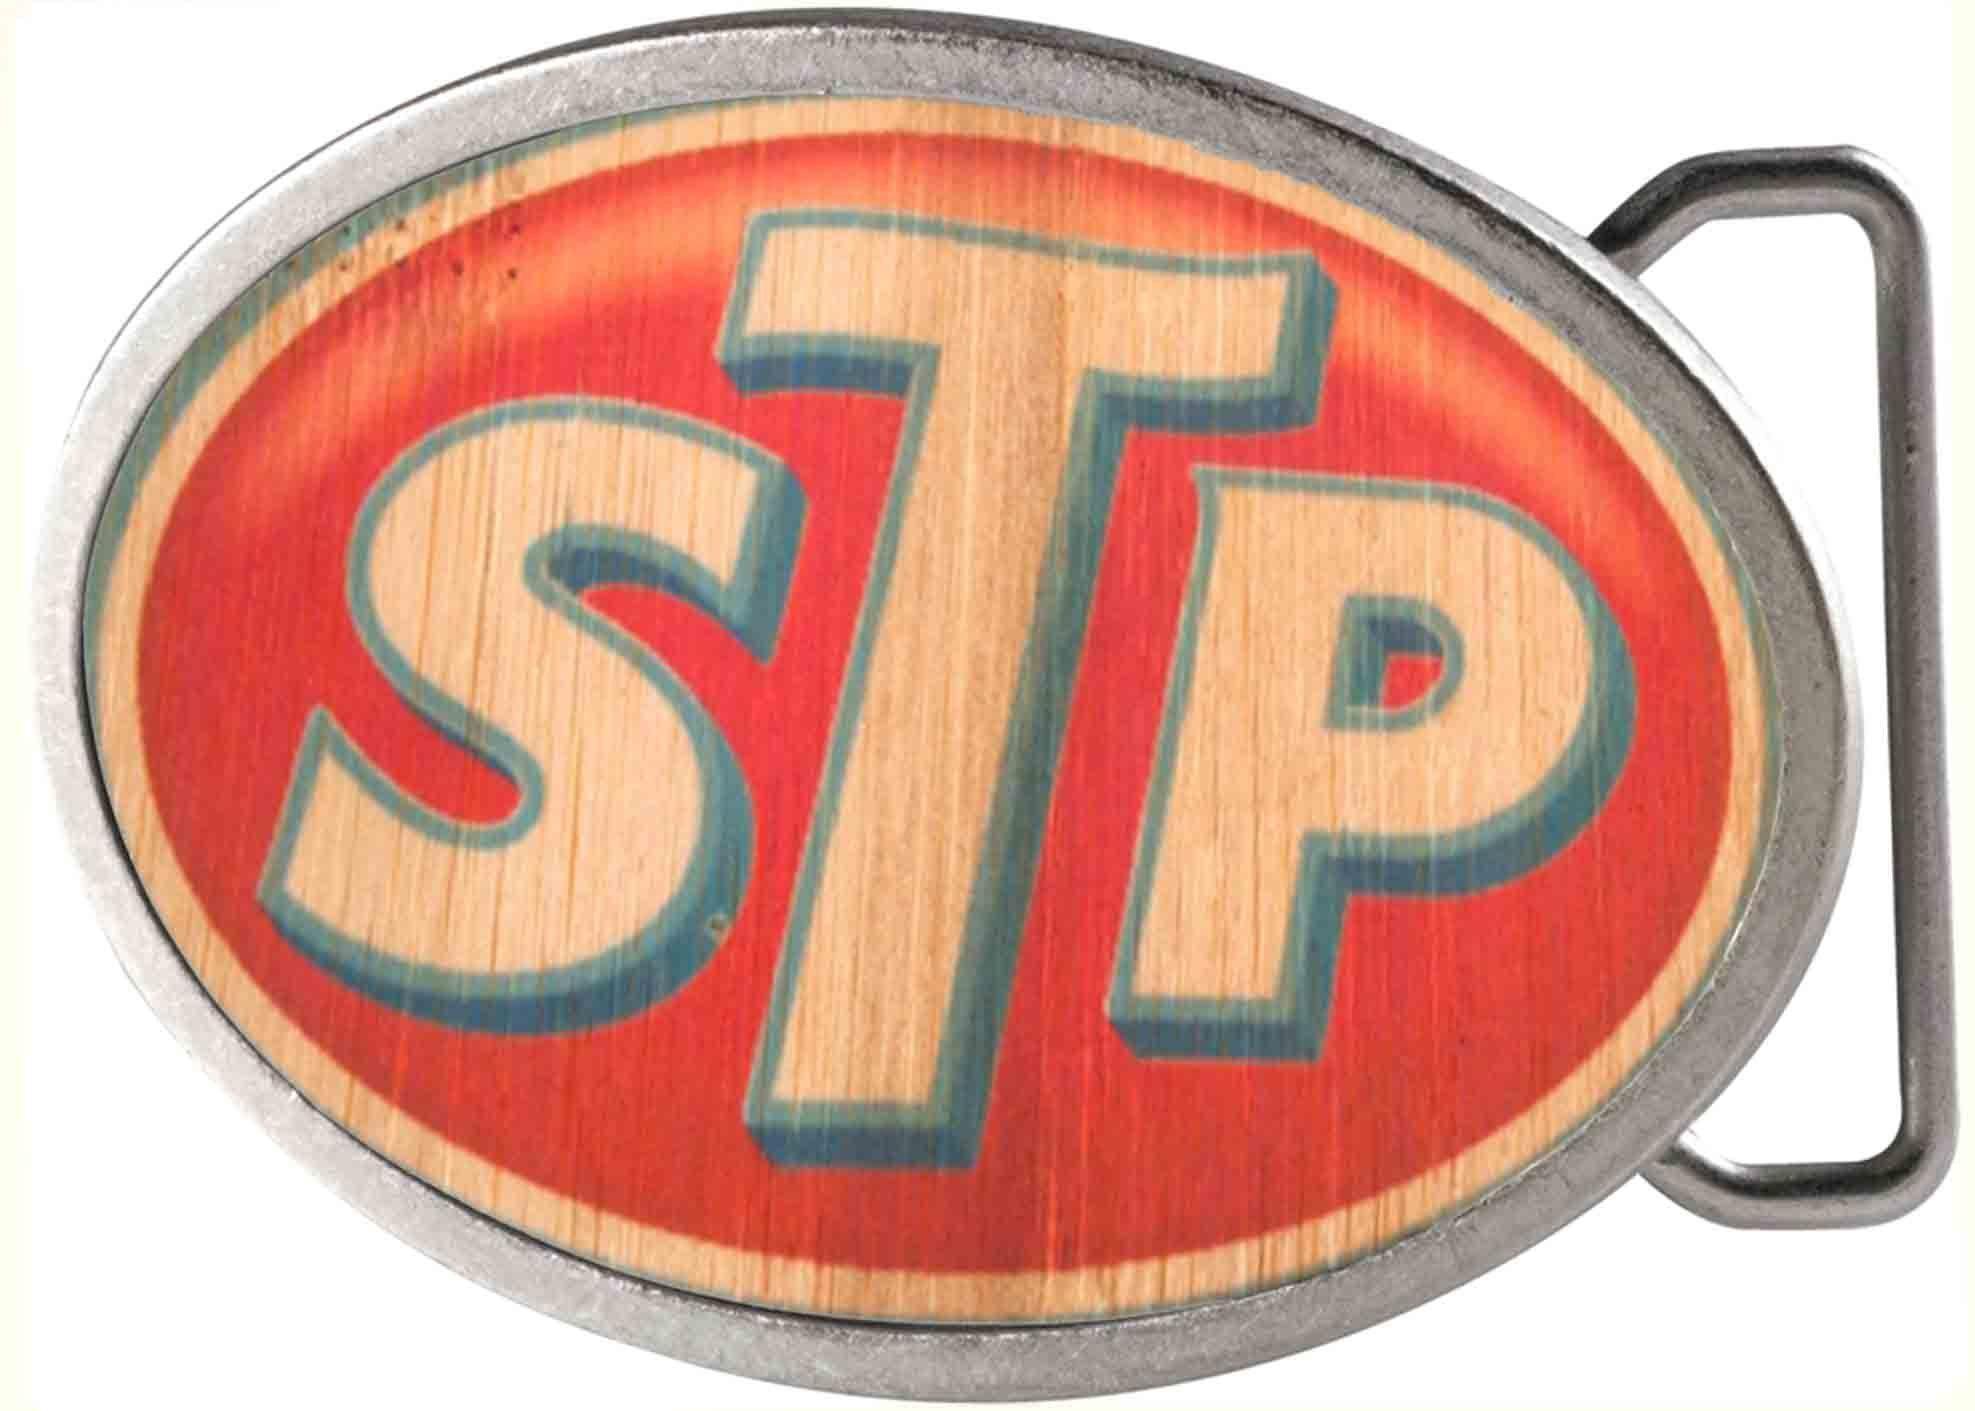 Star in Oval Logo - STP Logo Framed FCWood Natural/Blue/Red - Black Oval Rock Star ...